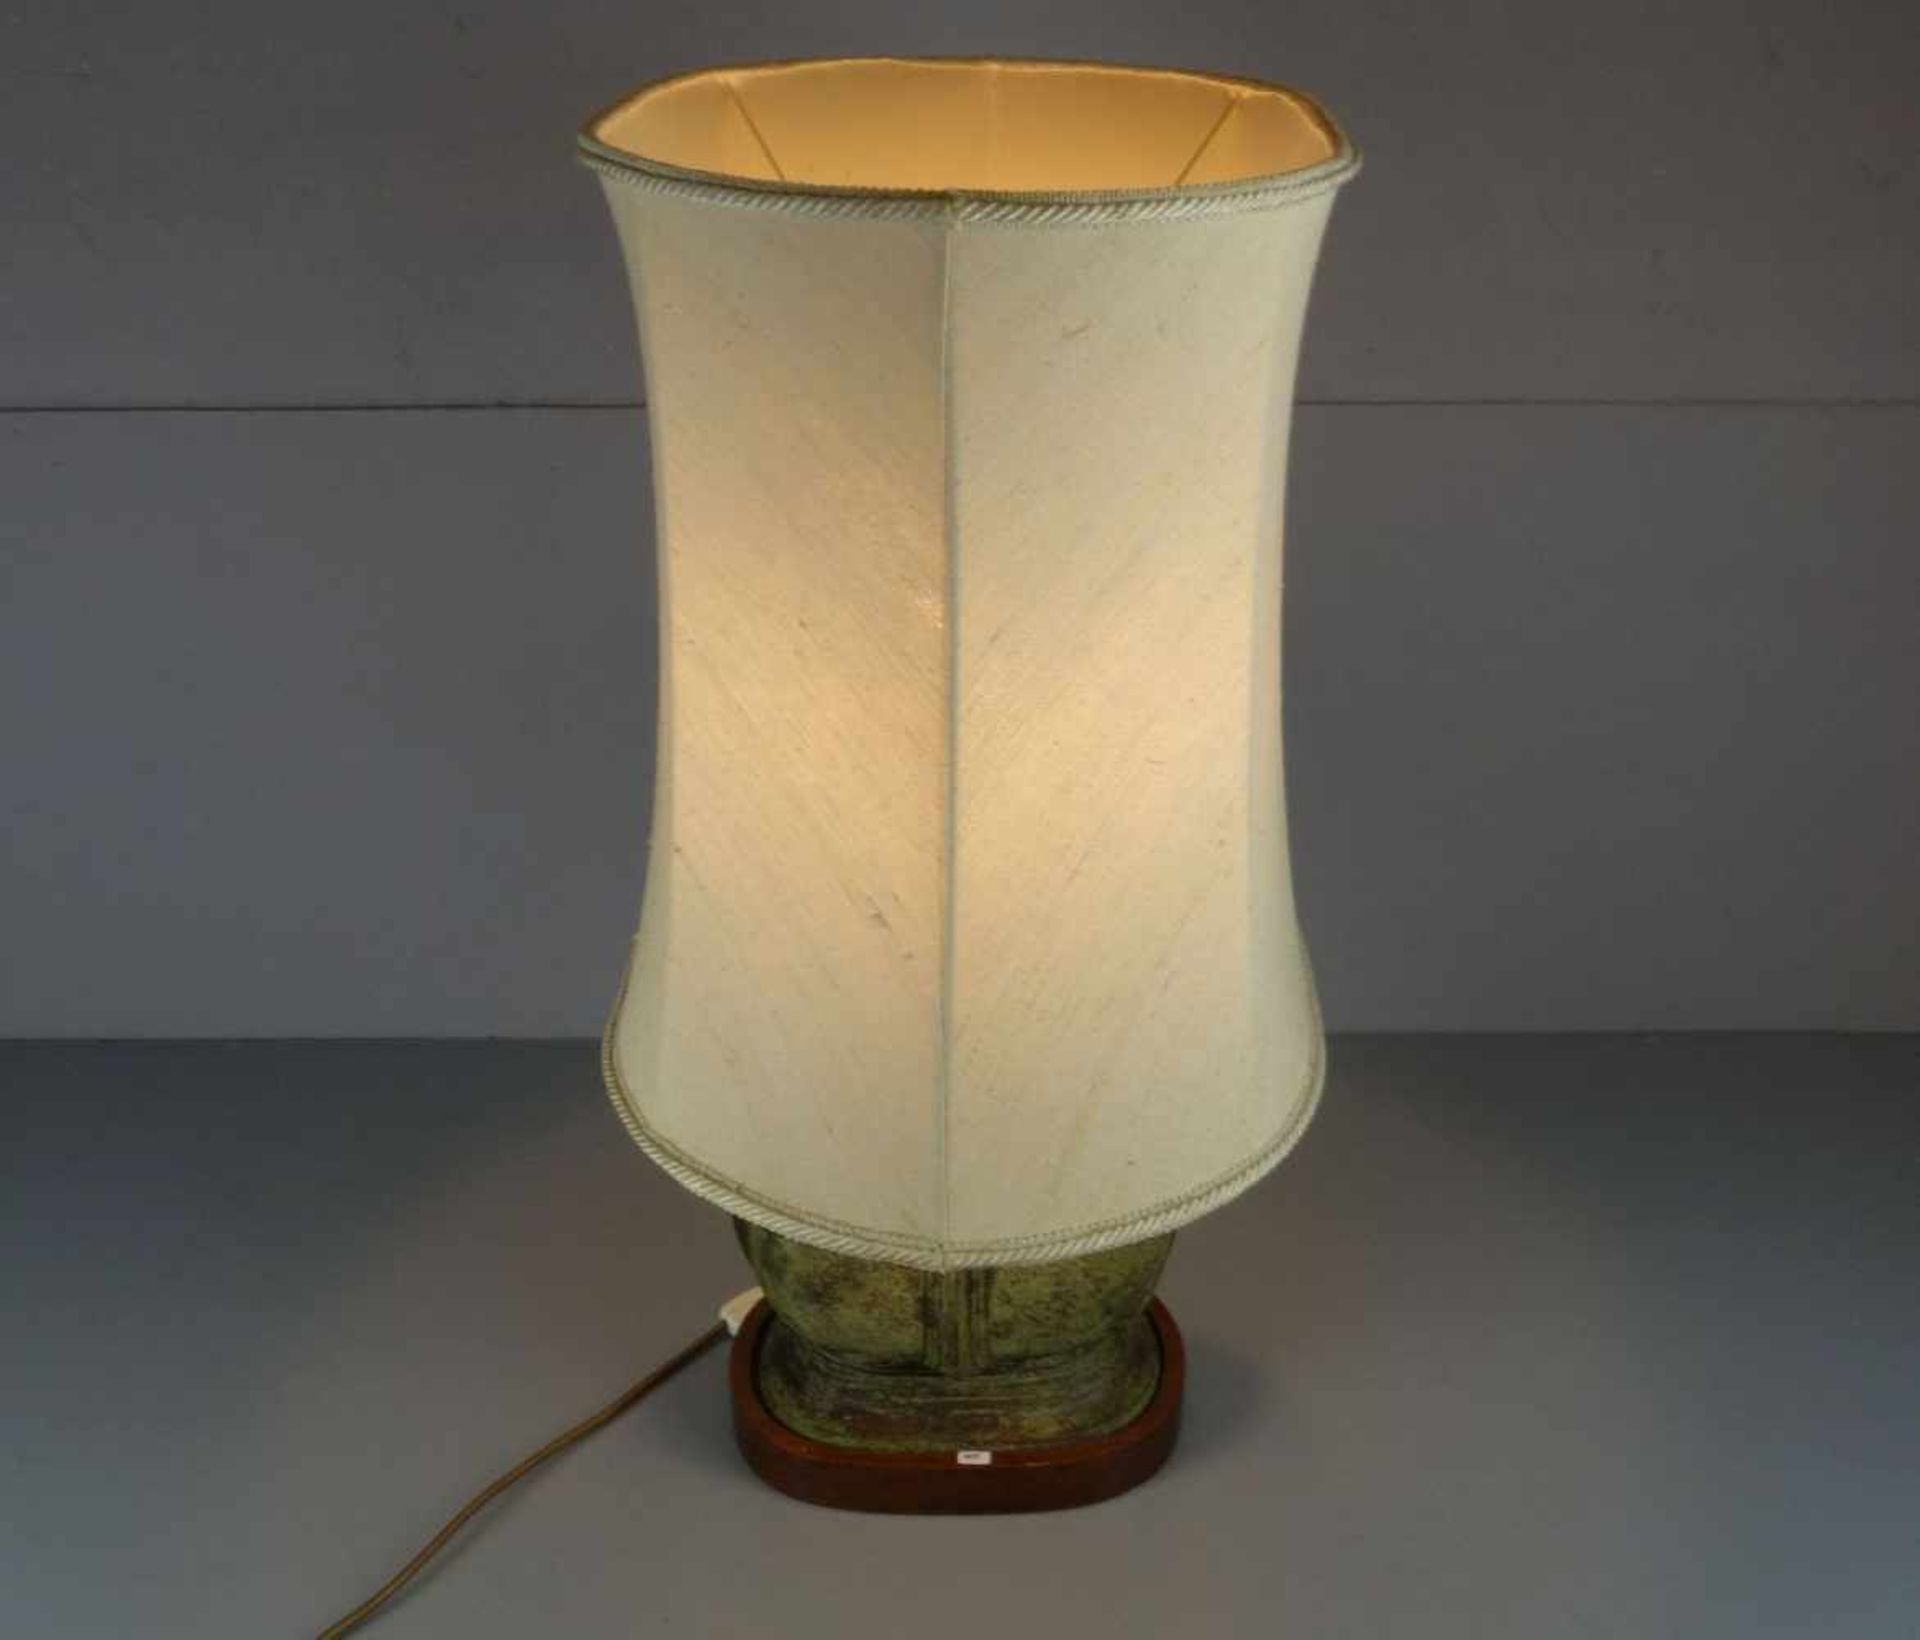 LAMPE / TISCHLAMPE MIT BRONZEVASE / table lamp, zweiflammige Brennstelle. Ovaler Holzstand, Schaft - Image 4 of 4